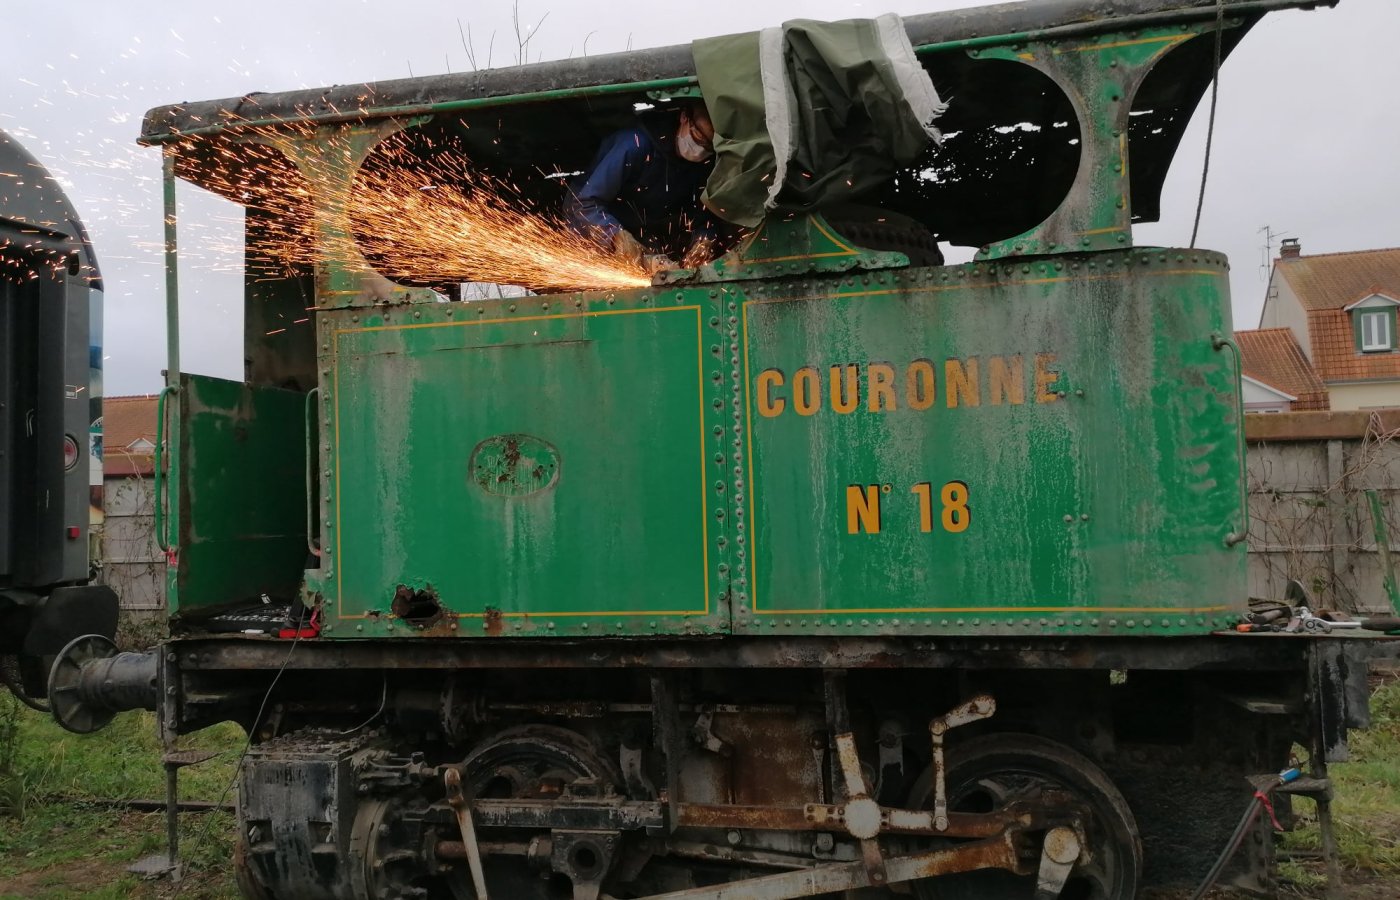 Cockerill n° 3157 – Locomotive à vapeur à chaudière verticale